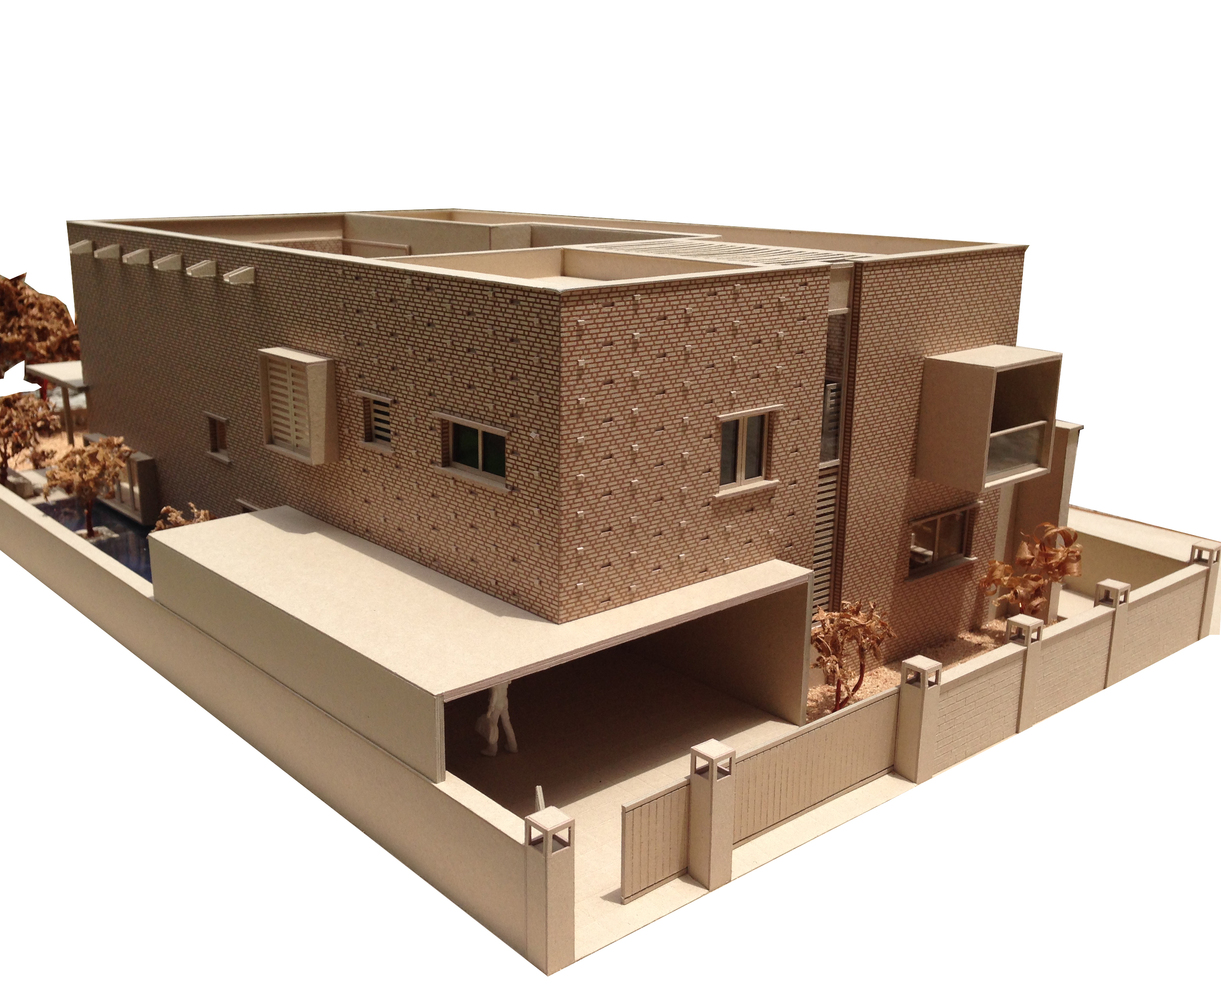 Mô hình 3D của căn nhà gạch